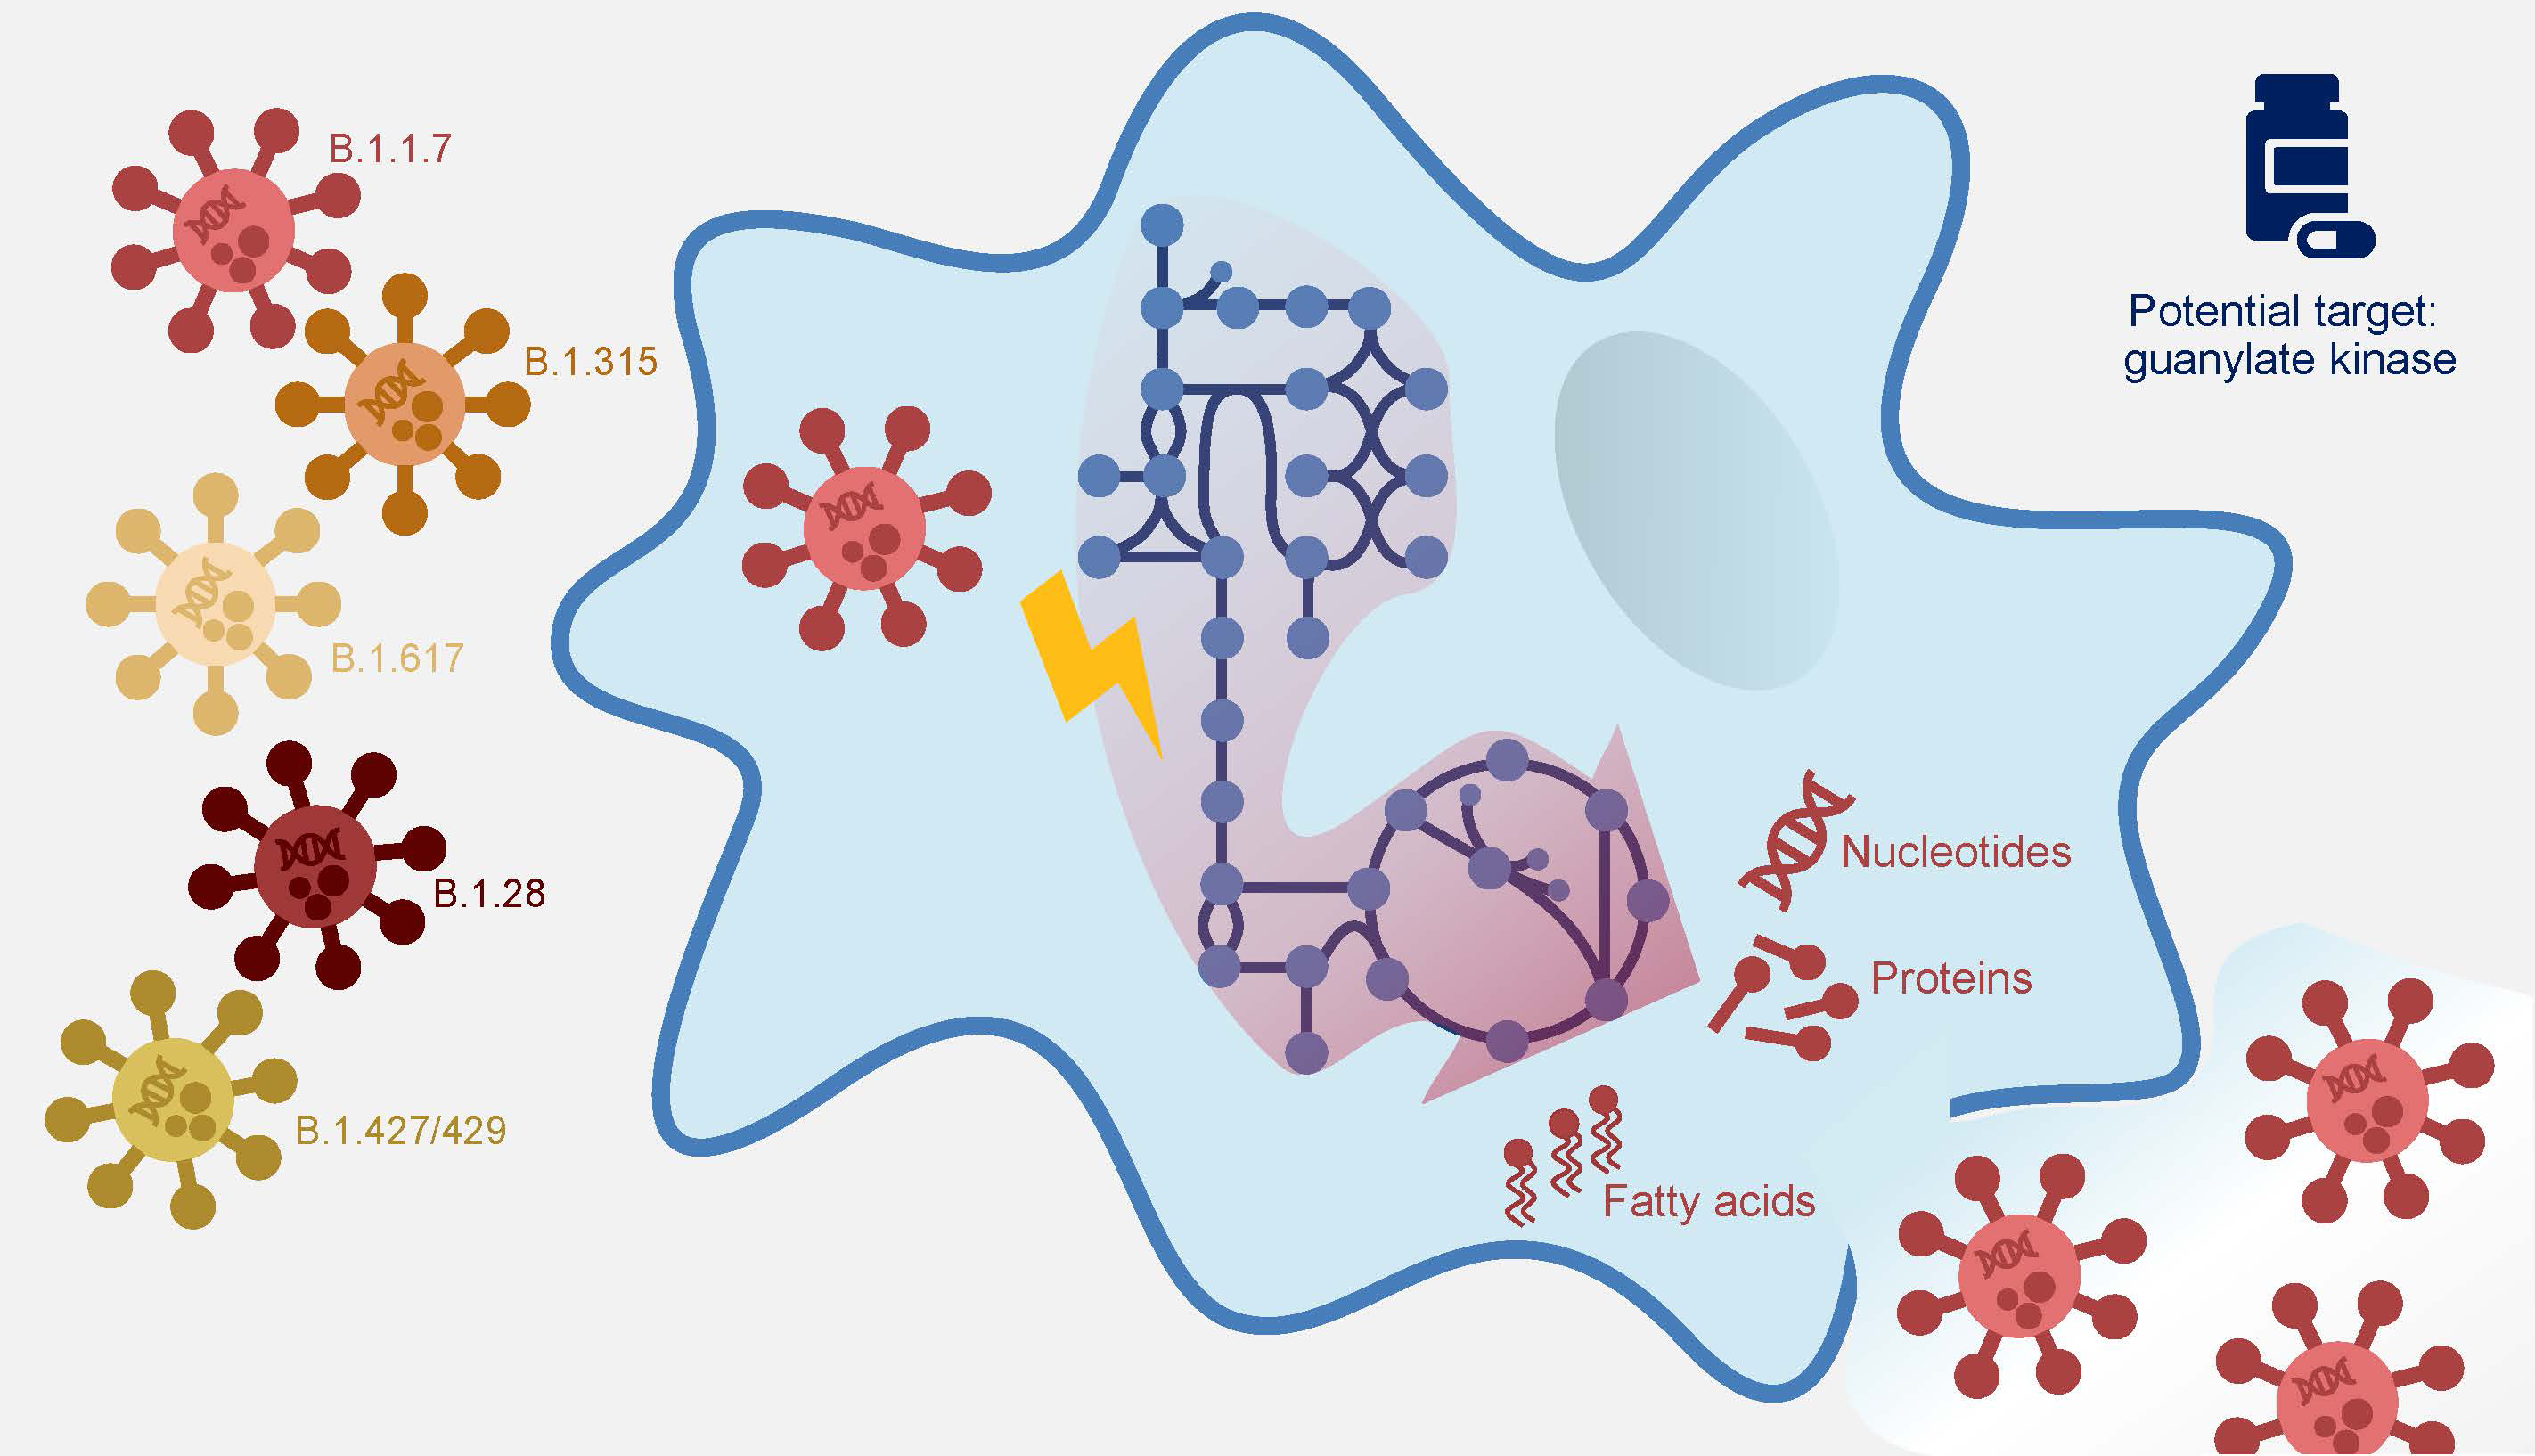 Das Coronavirus befällt menschliche Zellen und programmiert deren Stoffwechsel so um, dass neue Bestandteile für Viruspartikel, wie Nukleotide, Proteine und Fettsäuren, hergestellt werden. Durch Computeranalysen des veränderten Stoffwechsels in Alveolarmakropagen konnte in allen getesteten Virusmutanten die Guanylatkinase als möglicher Angriffspunkt bestätigt werden.